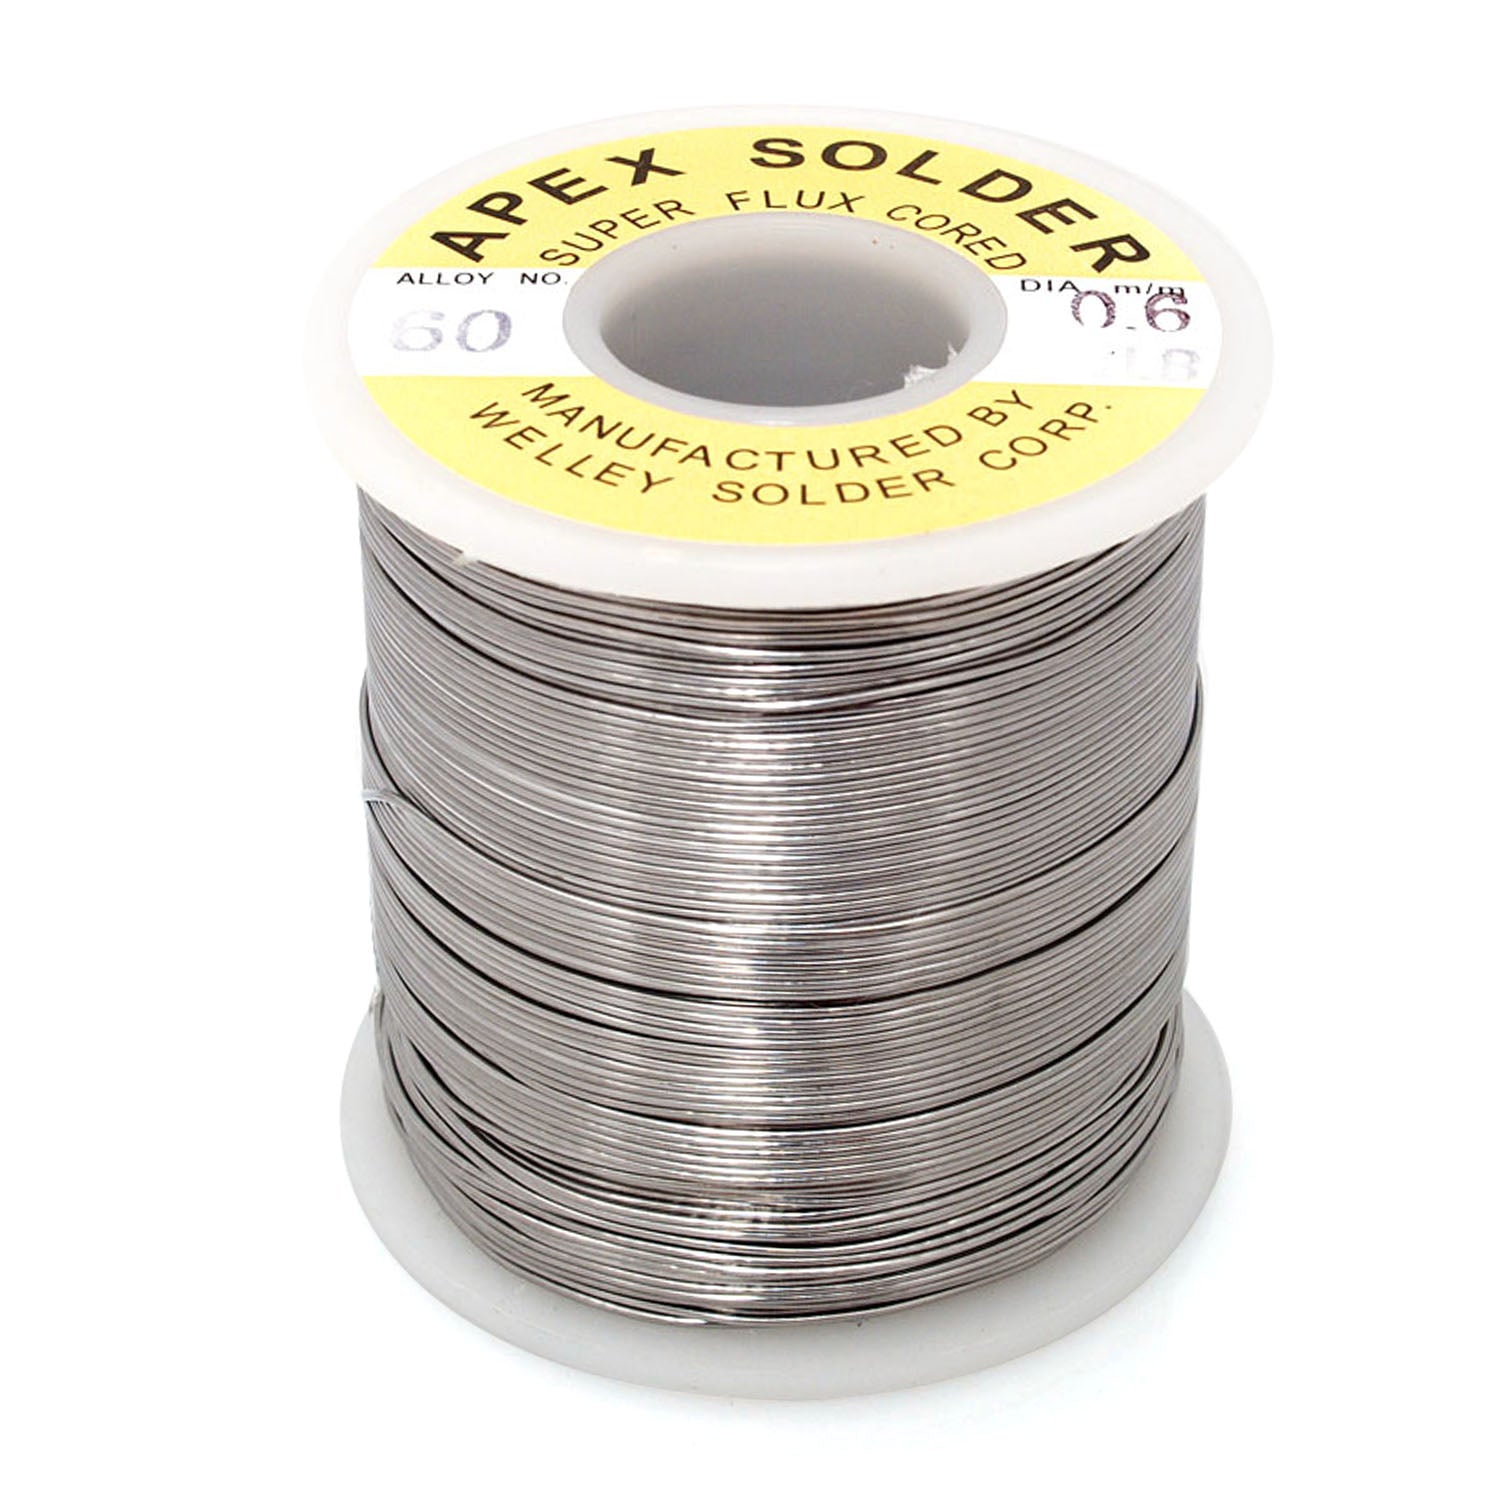 125-640610A 0.6m 1.0lb 60/40 APEX Solder wire